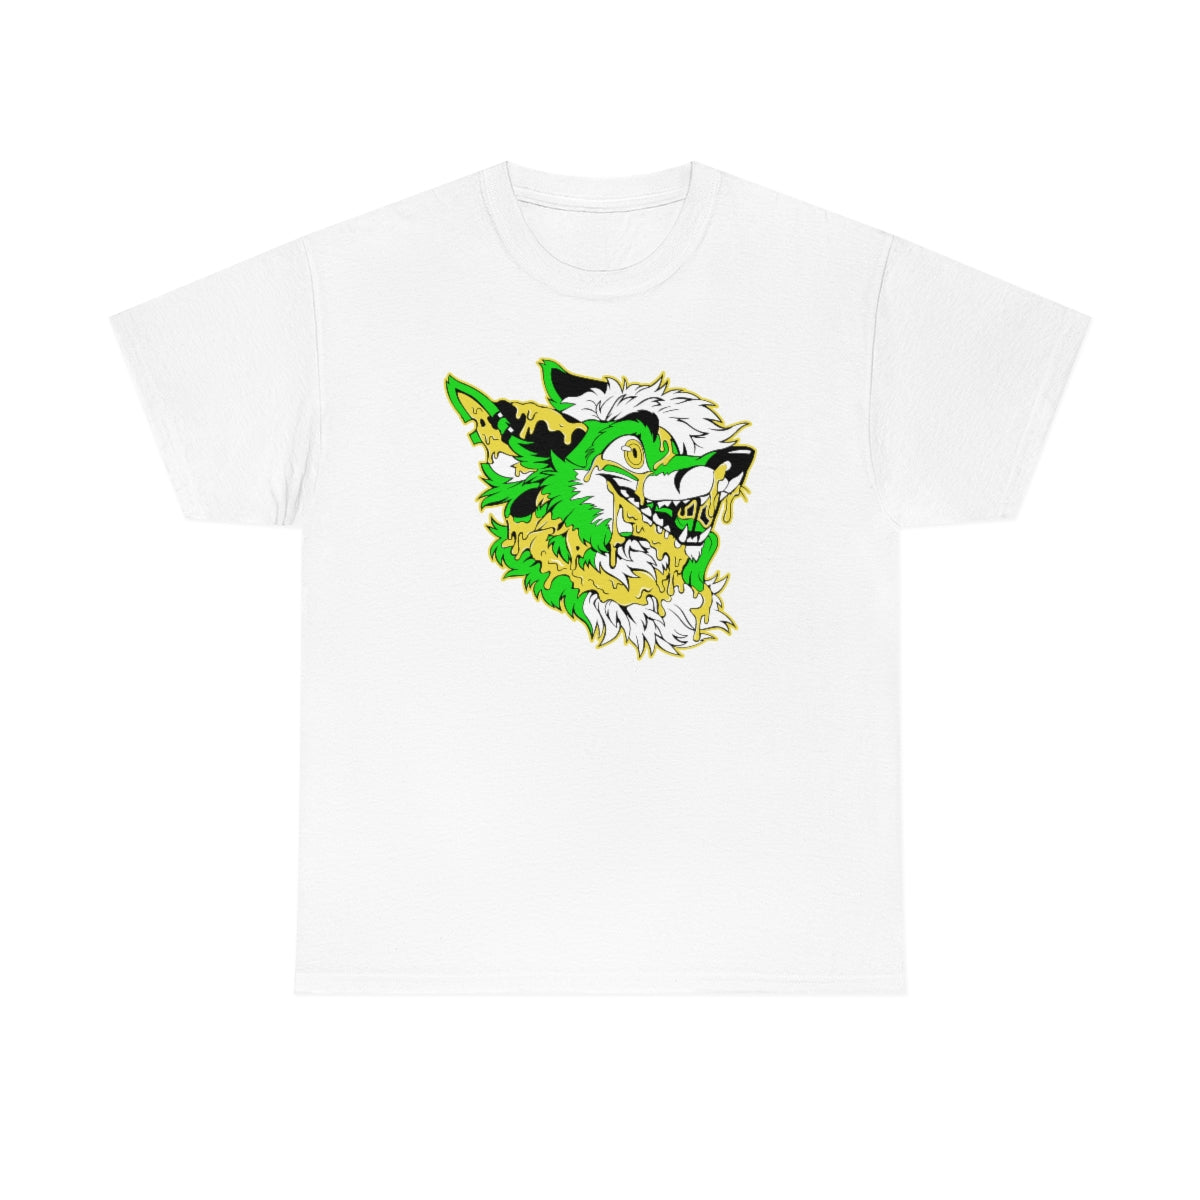 Green and Yellow - T-Shirt T-Shirt Artworktee White S 